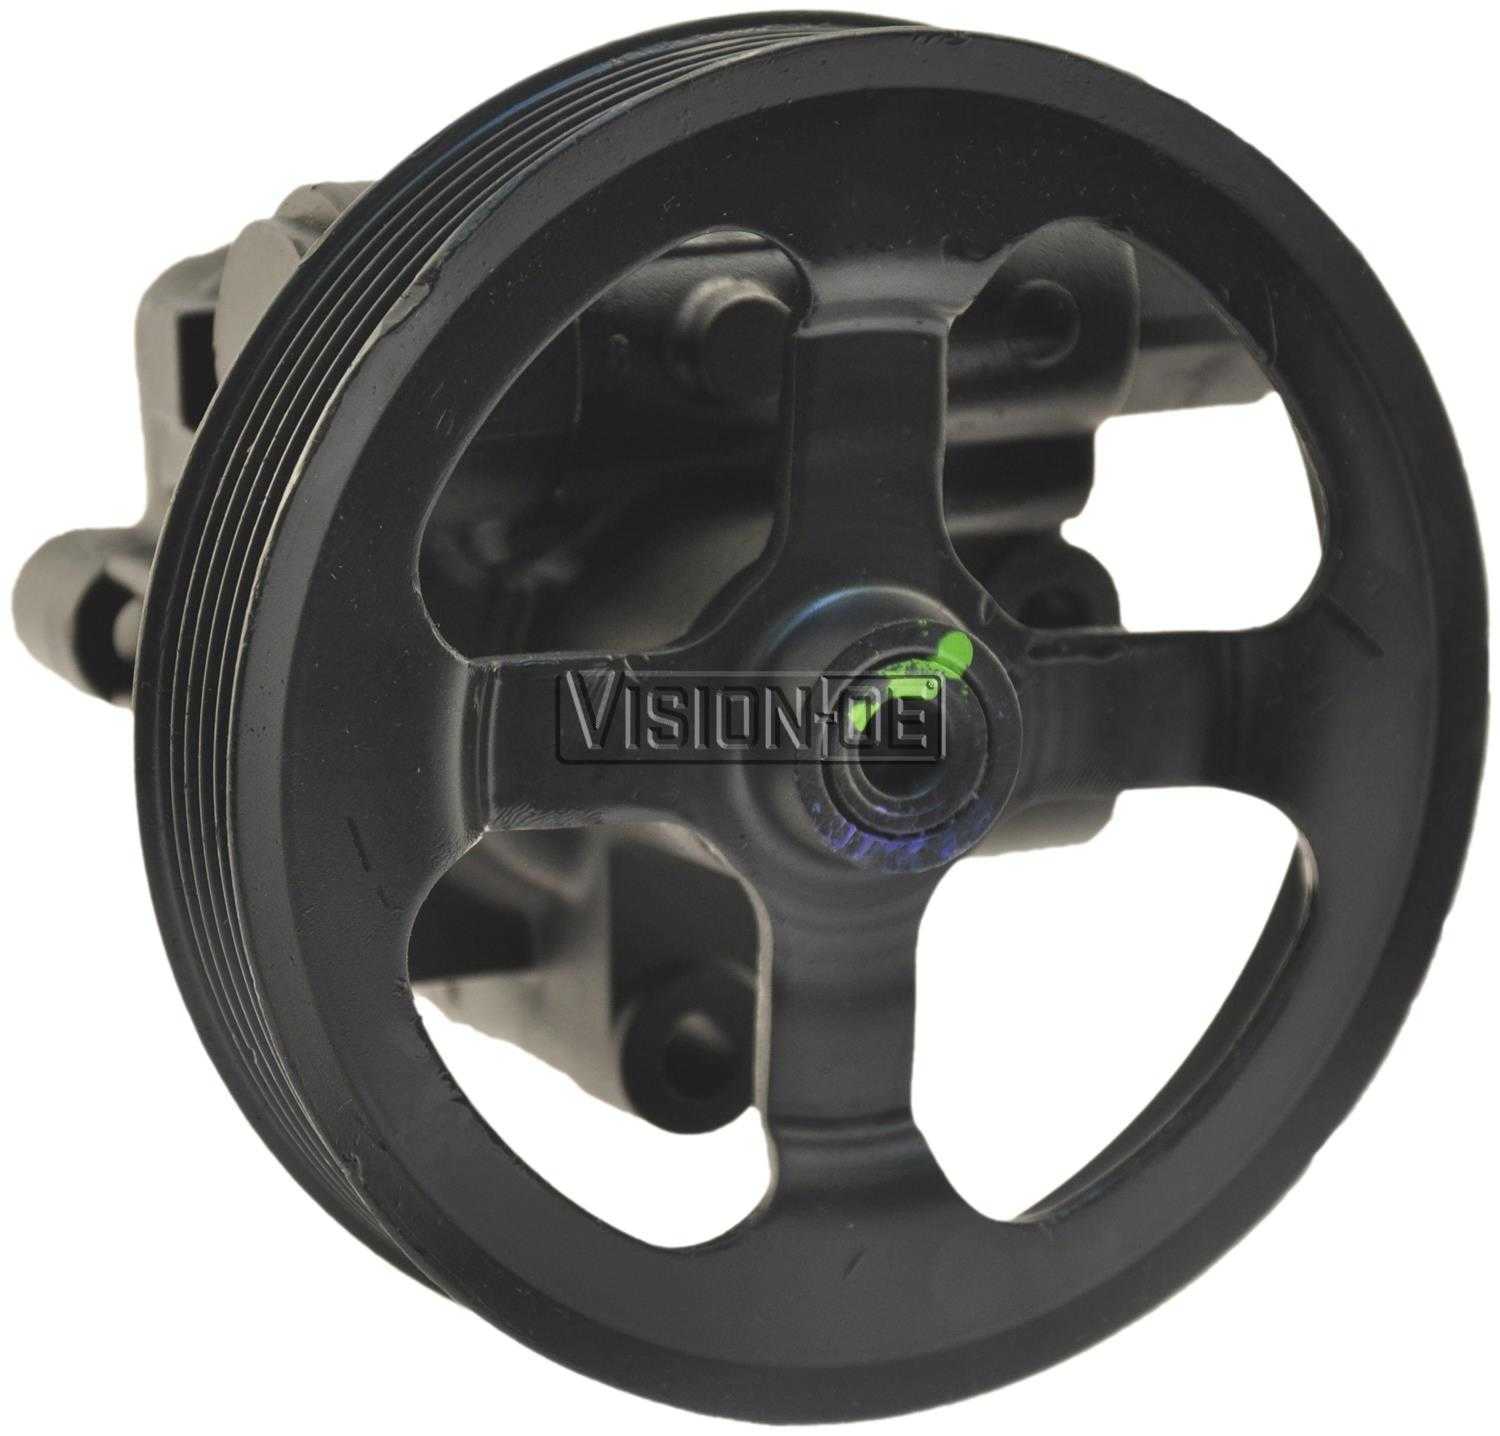 VISION-OE - Reman Power Steering Pump - VOE 990-0858